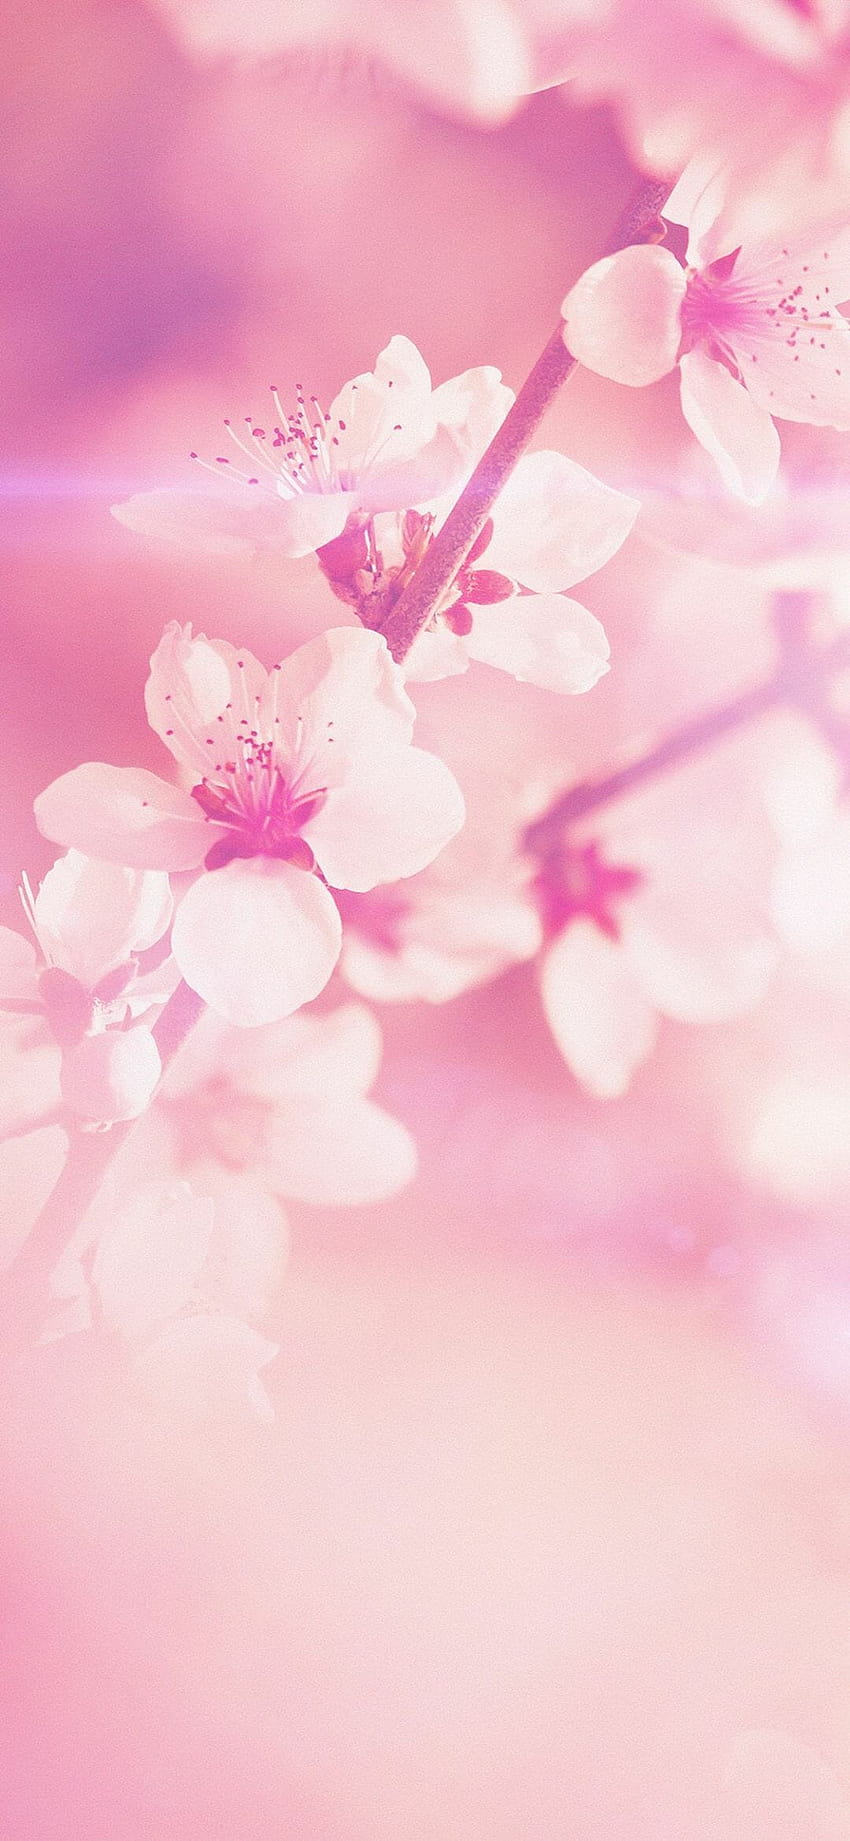 1 Spring Flower Pink Cherry Blossom Flare Nature IPhone X, flor primavera rosa fondo de pantalla del teléfono